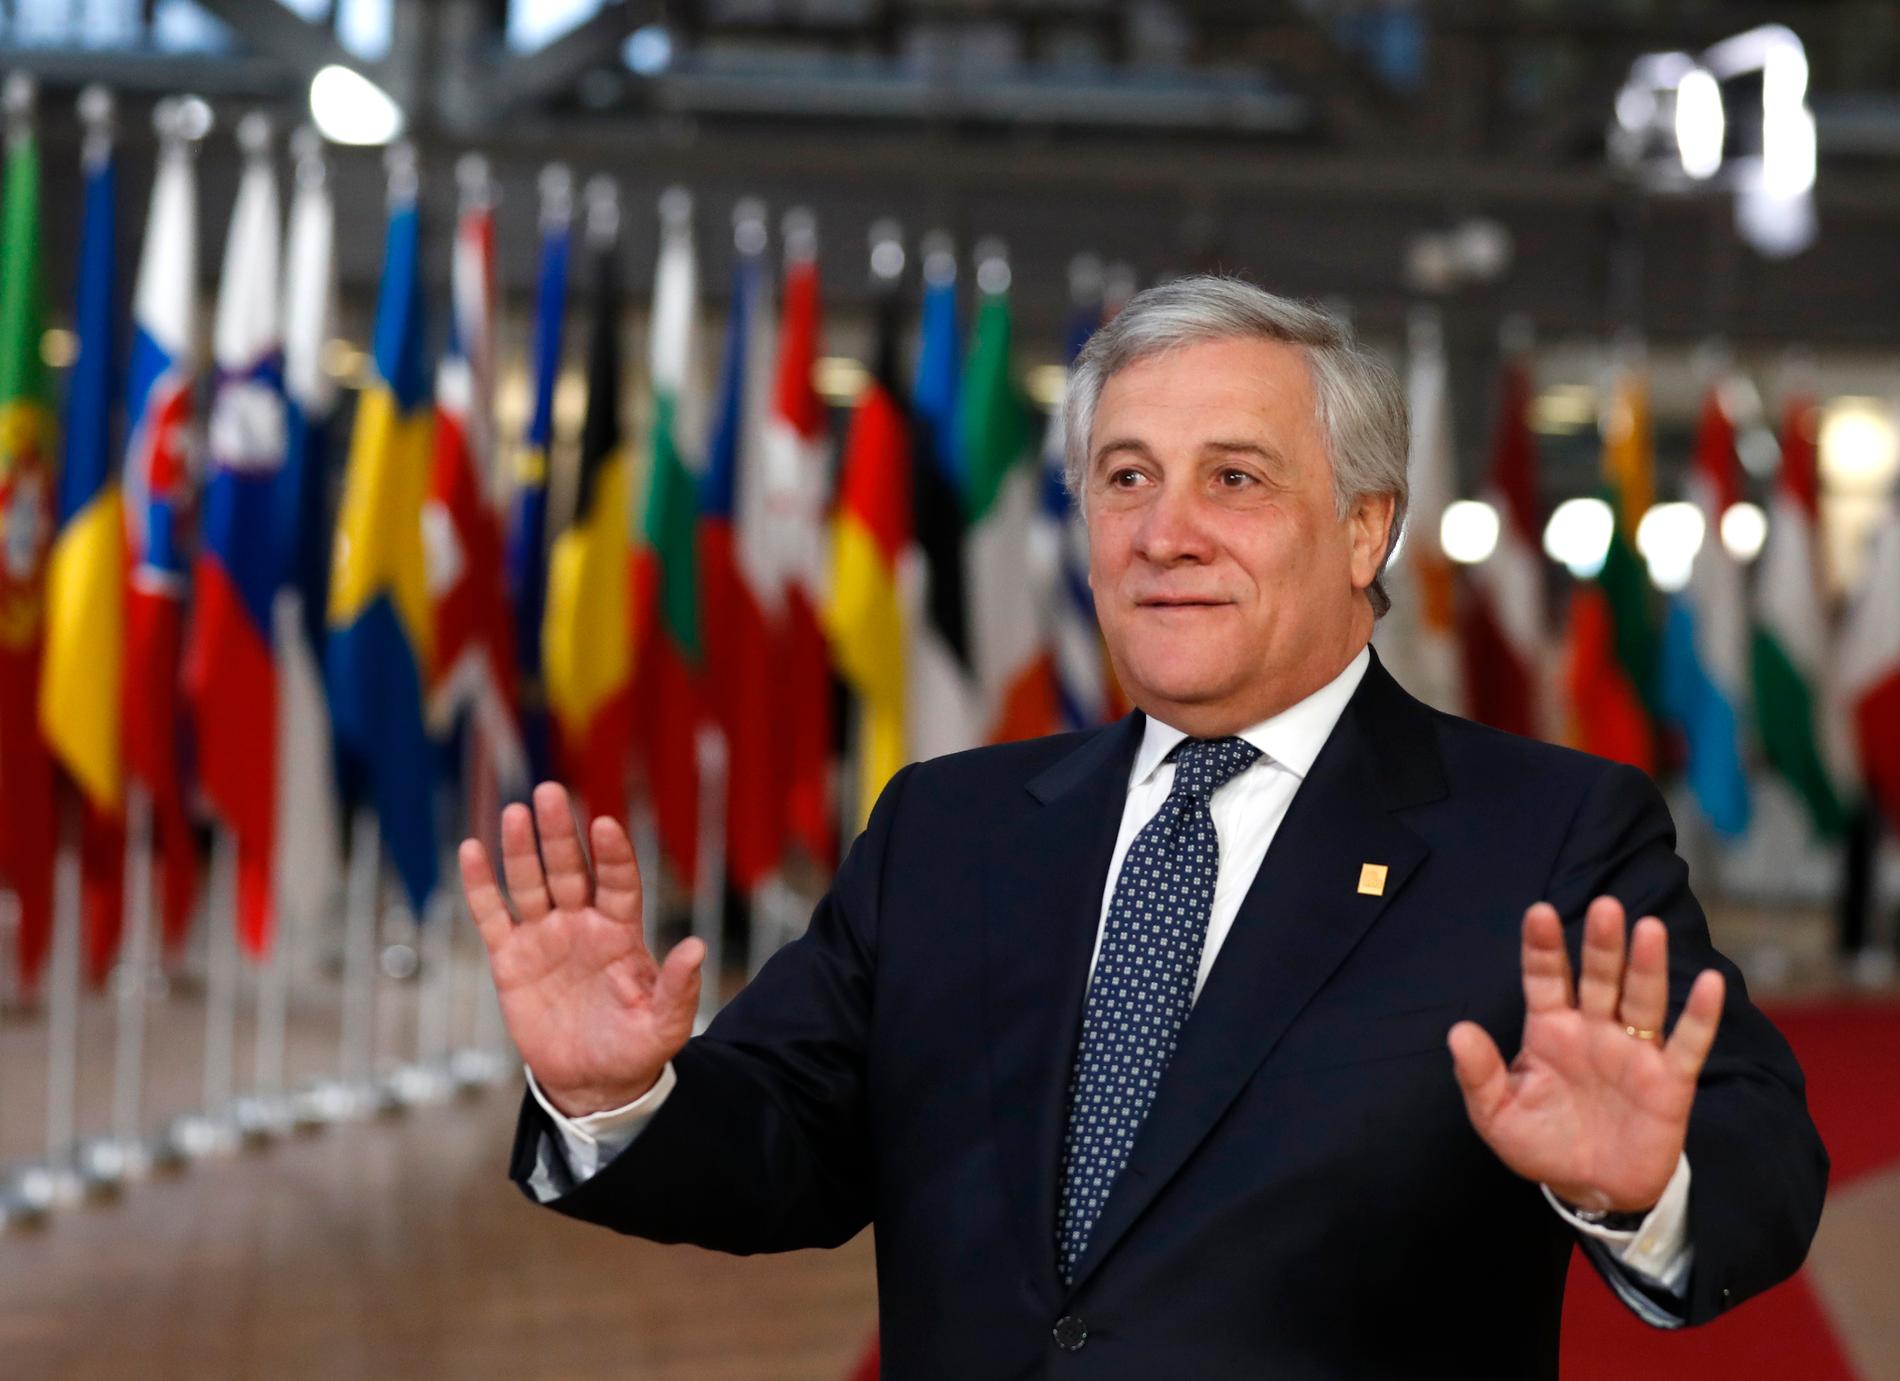 Antonio Tajani har fått hård kritik för sina uttalanden om diktatorn Mussolini.